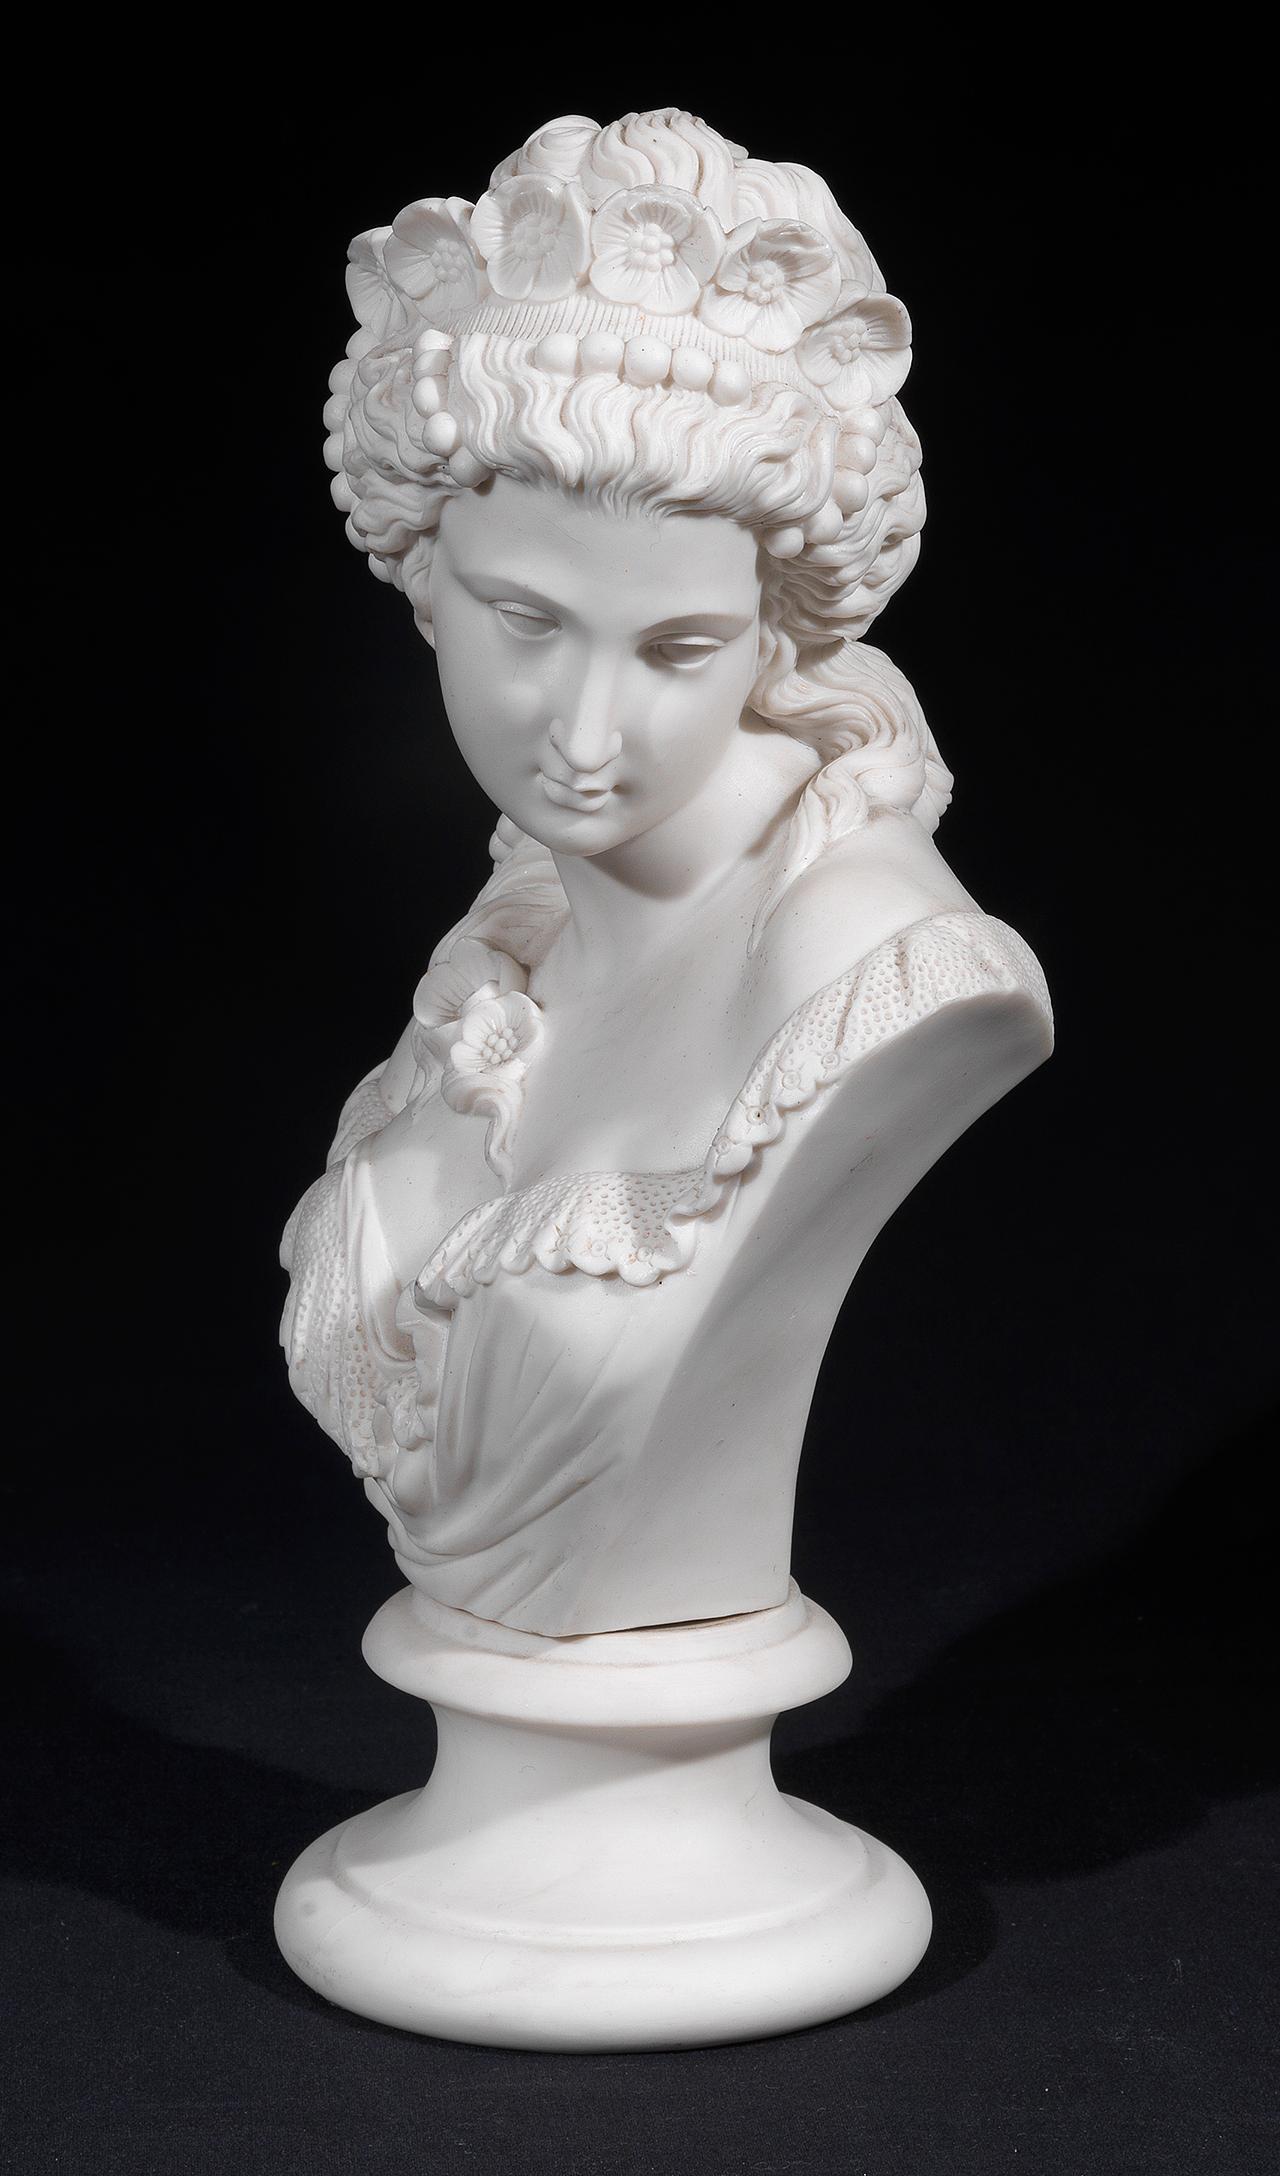 Un joli buste de flore en céramique parienne de Copeland, représentant une jeune fille avec la tête tournée vers la gauche et des mèches de cheveux tombant sur son épaule gauche, avec une gerbe de roses attachée
Mesures : Hauteur 21cm.